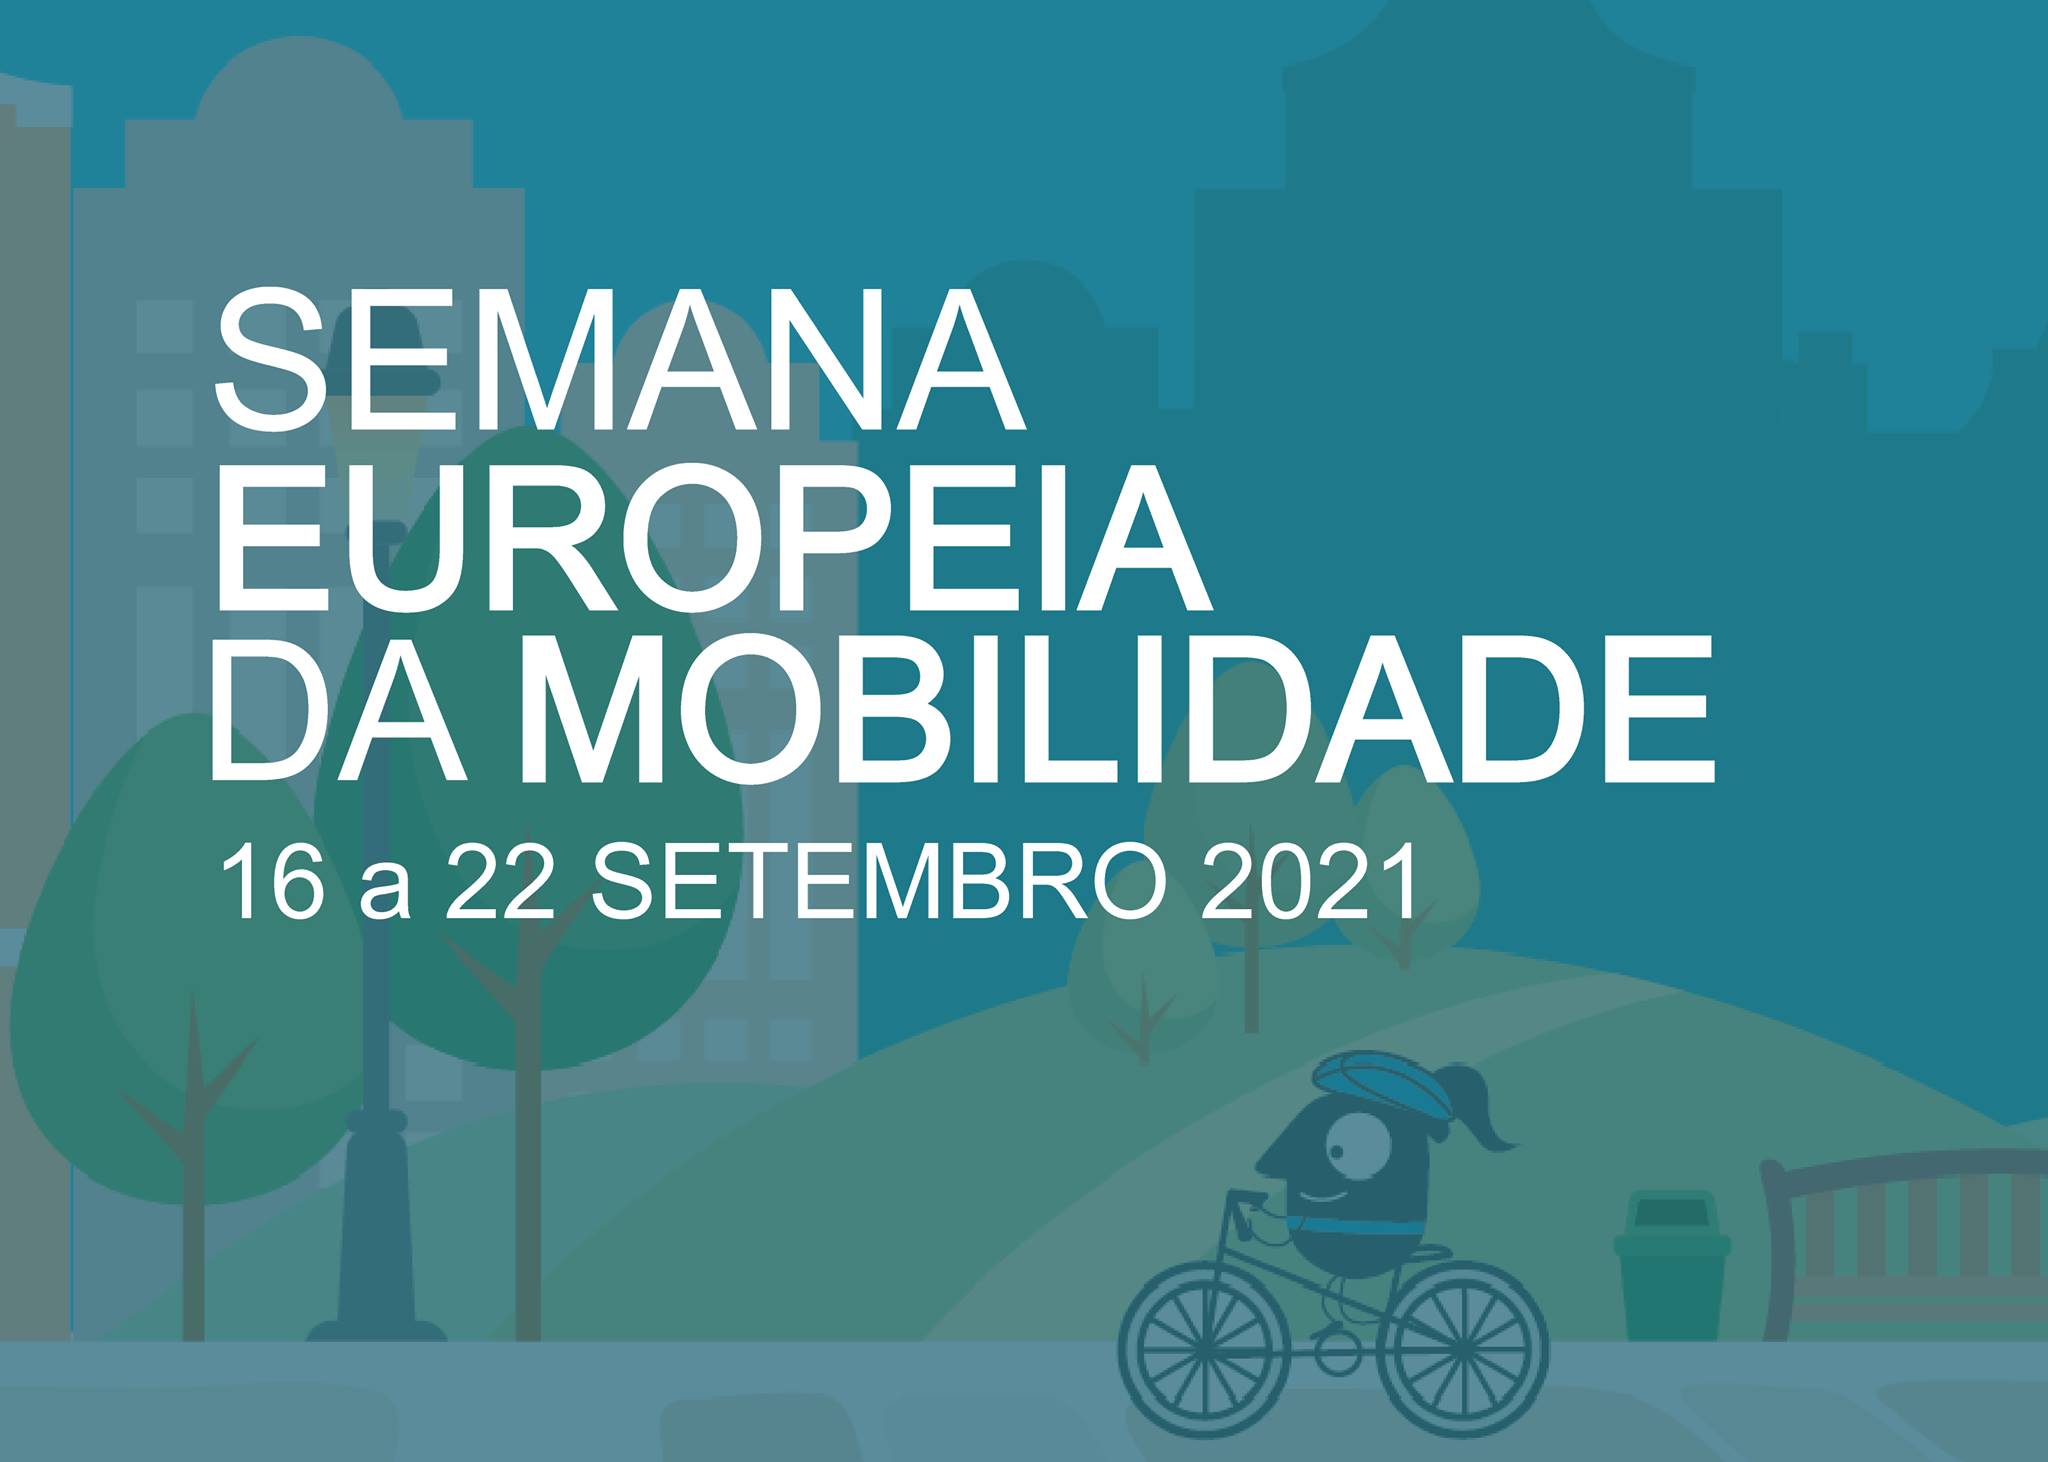 Caminhada em Manique do Intendente - Semana Europeia da Mobilidade 2021